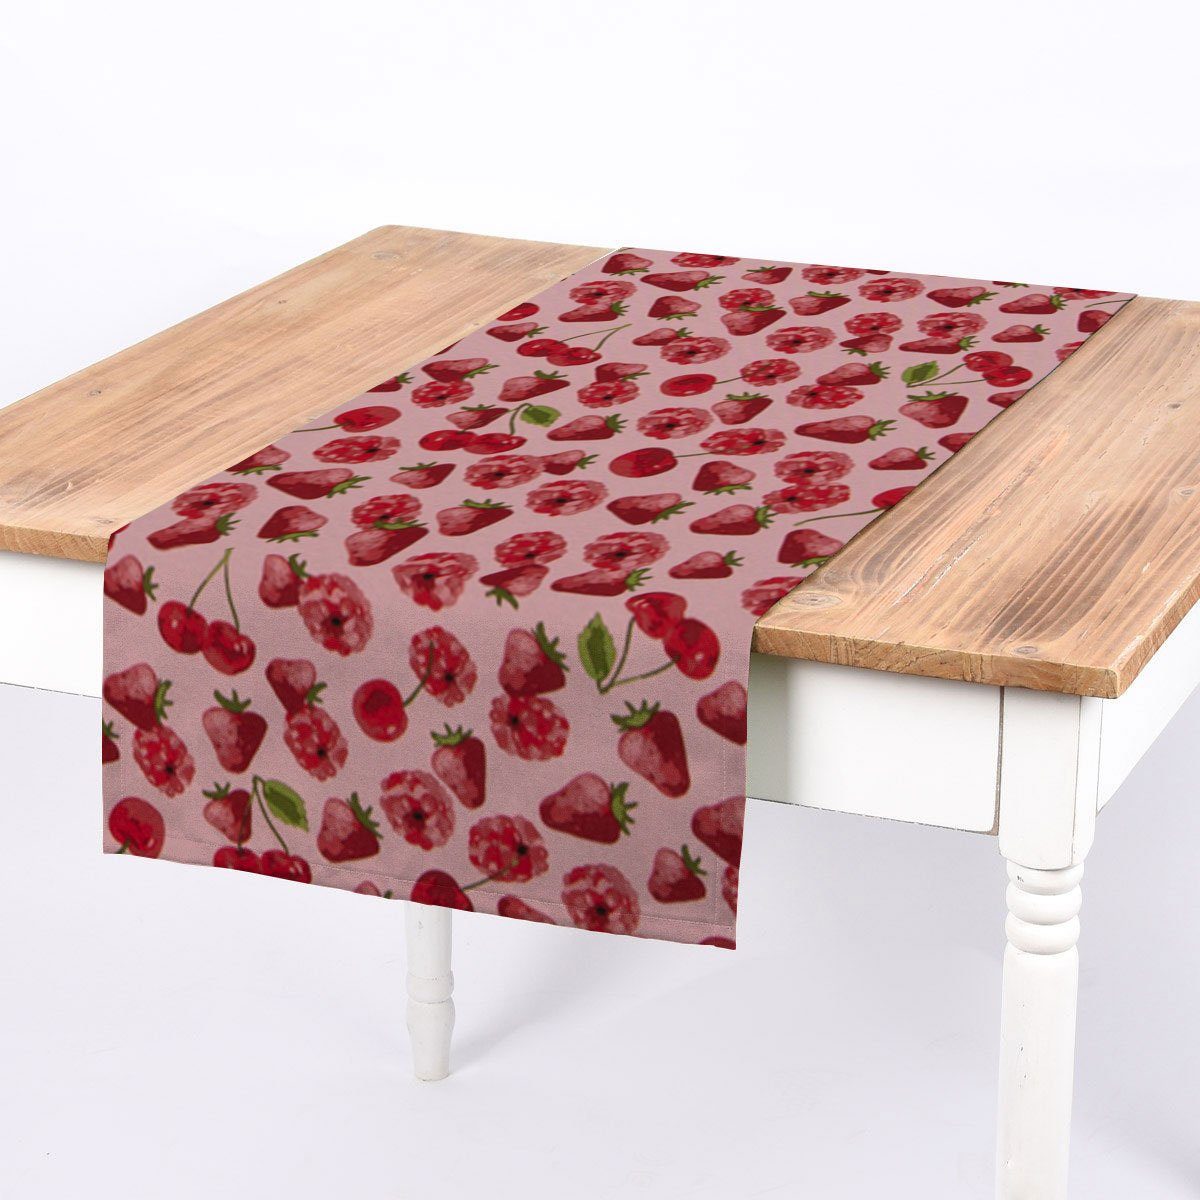 SCHÖNER LEBEN. Tischläufer SCHÖNER LEBEN. Tischläufer Canvas Erdbeeren Kirschen Himbeeren rosa, handmade